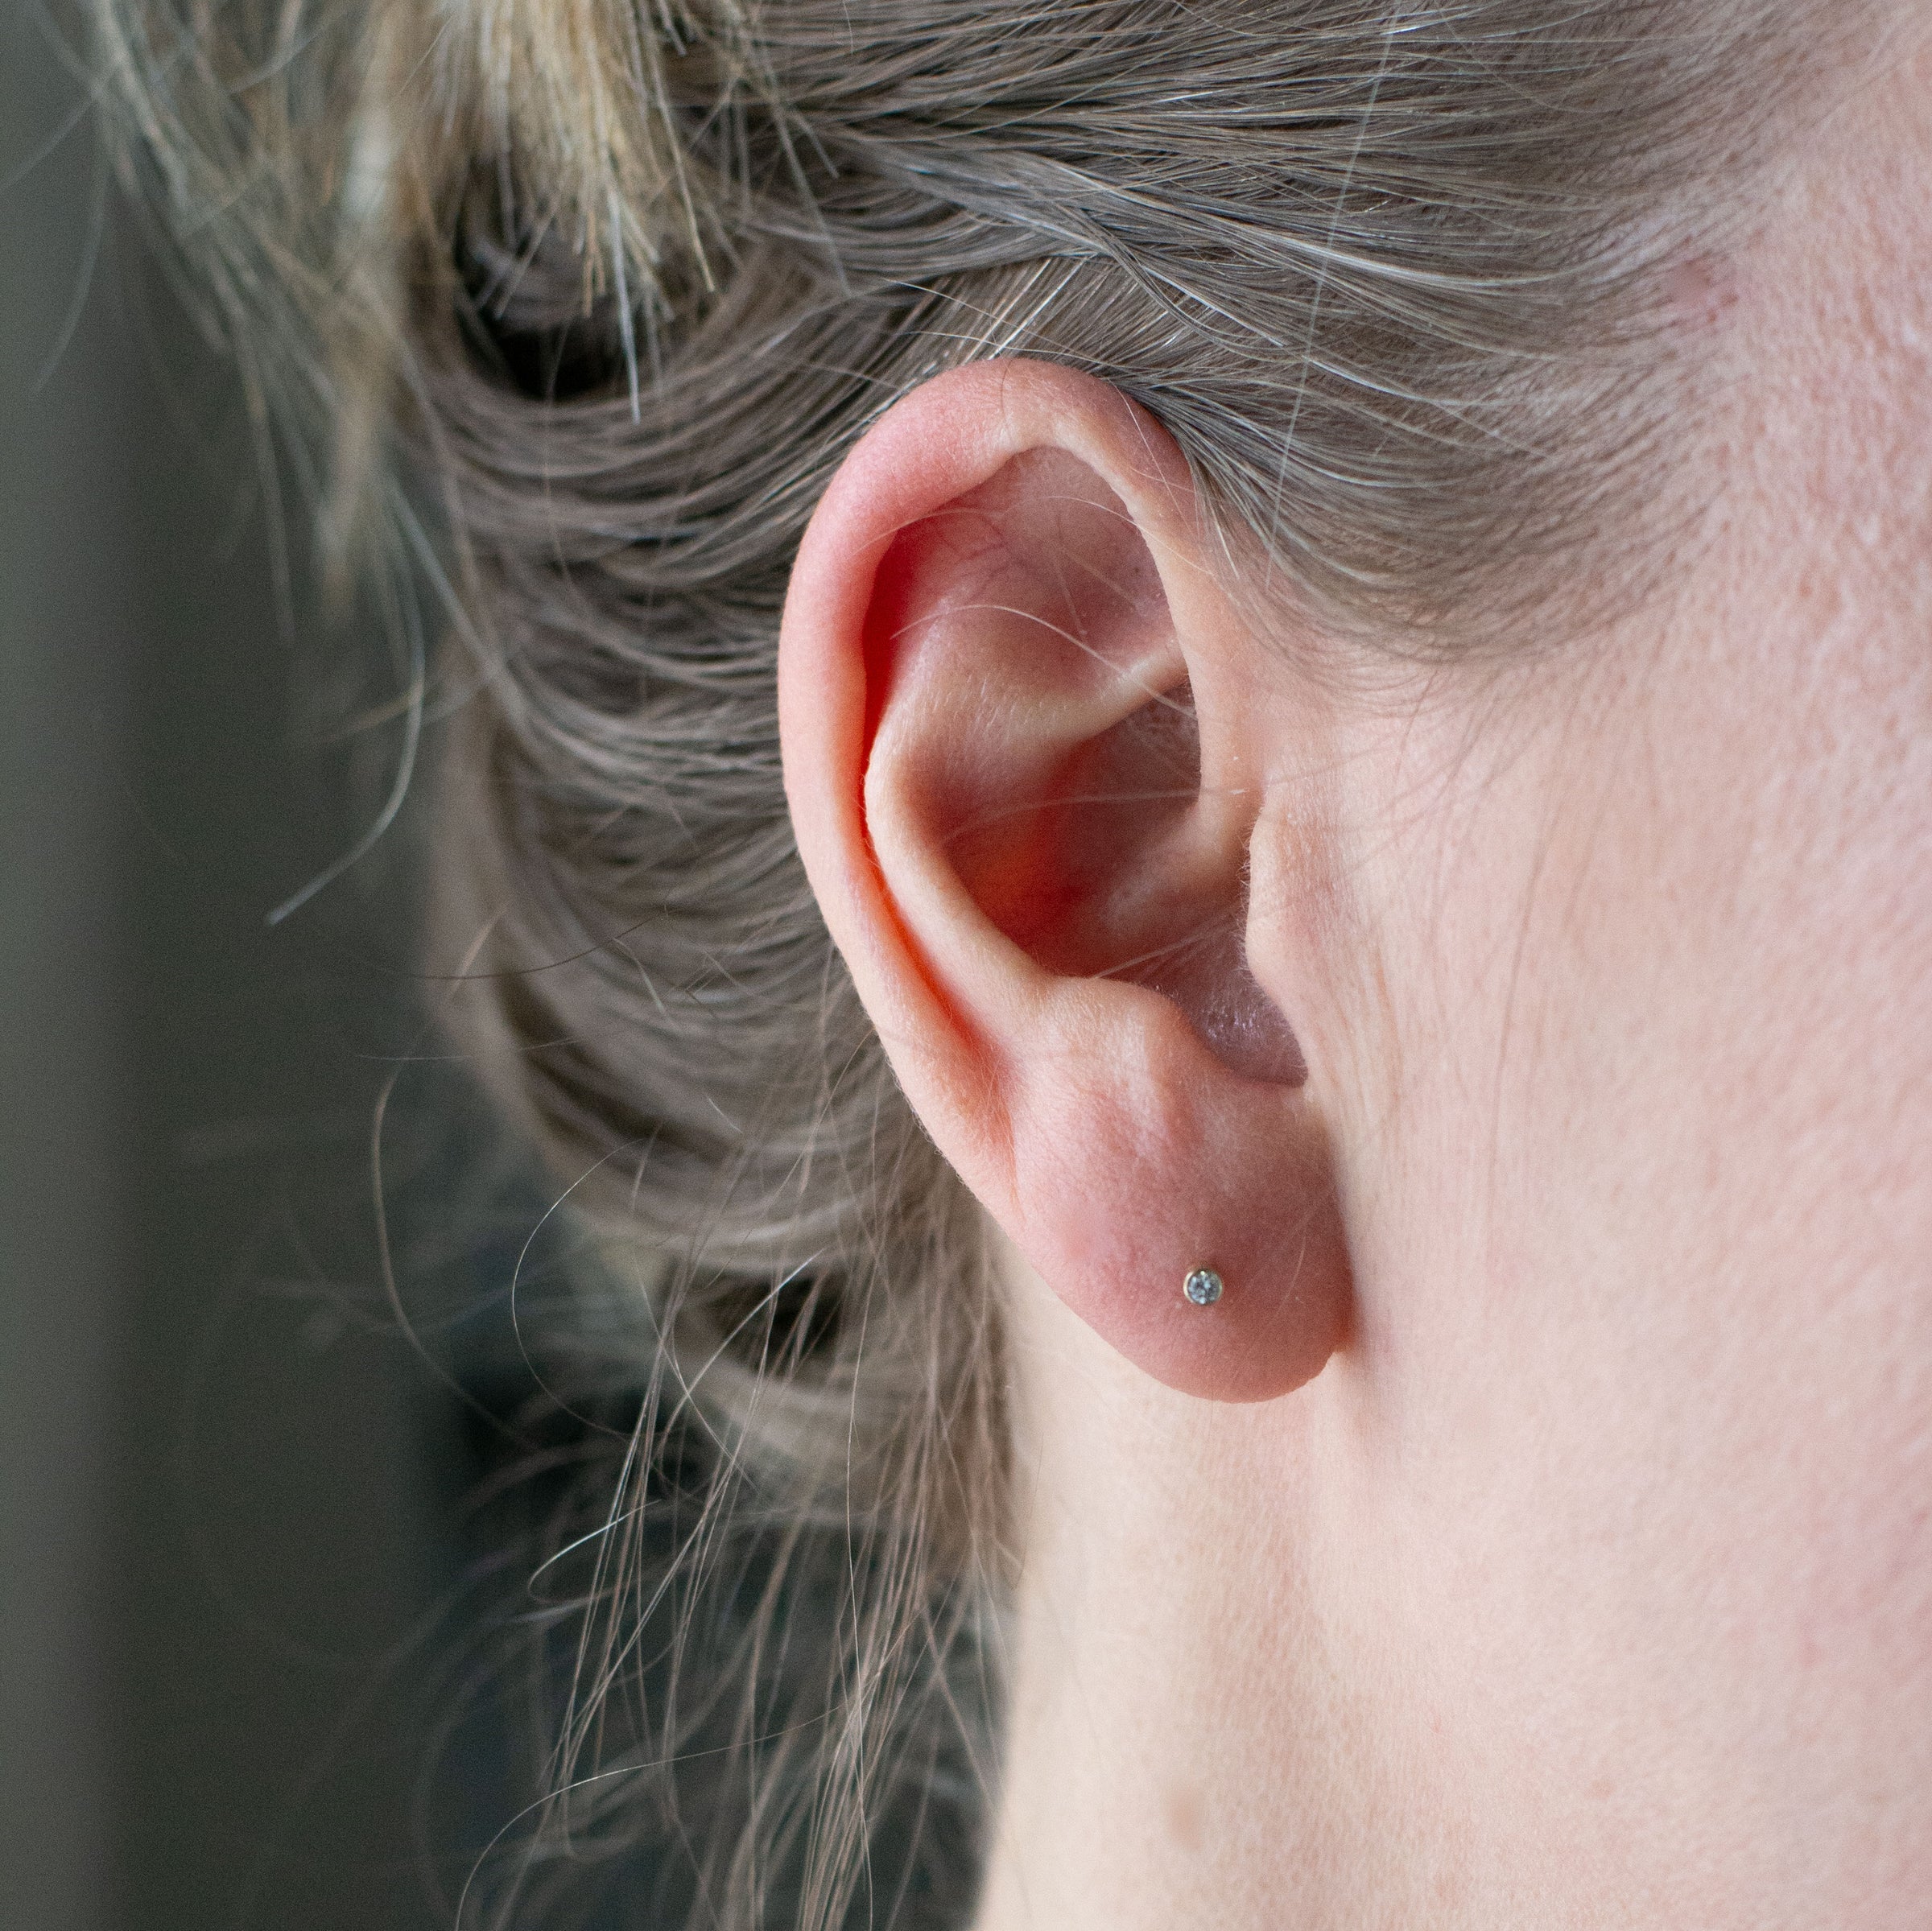 Petite Diamond Stud Earrings